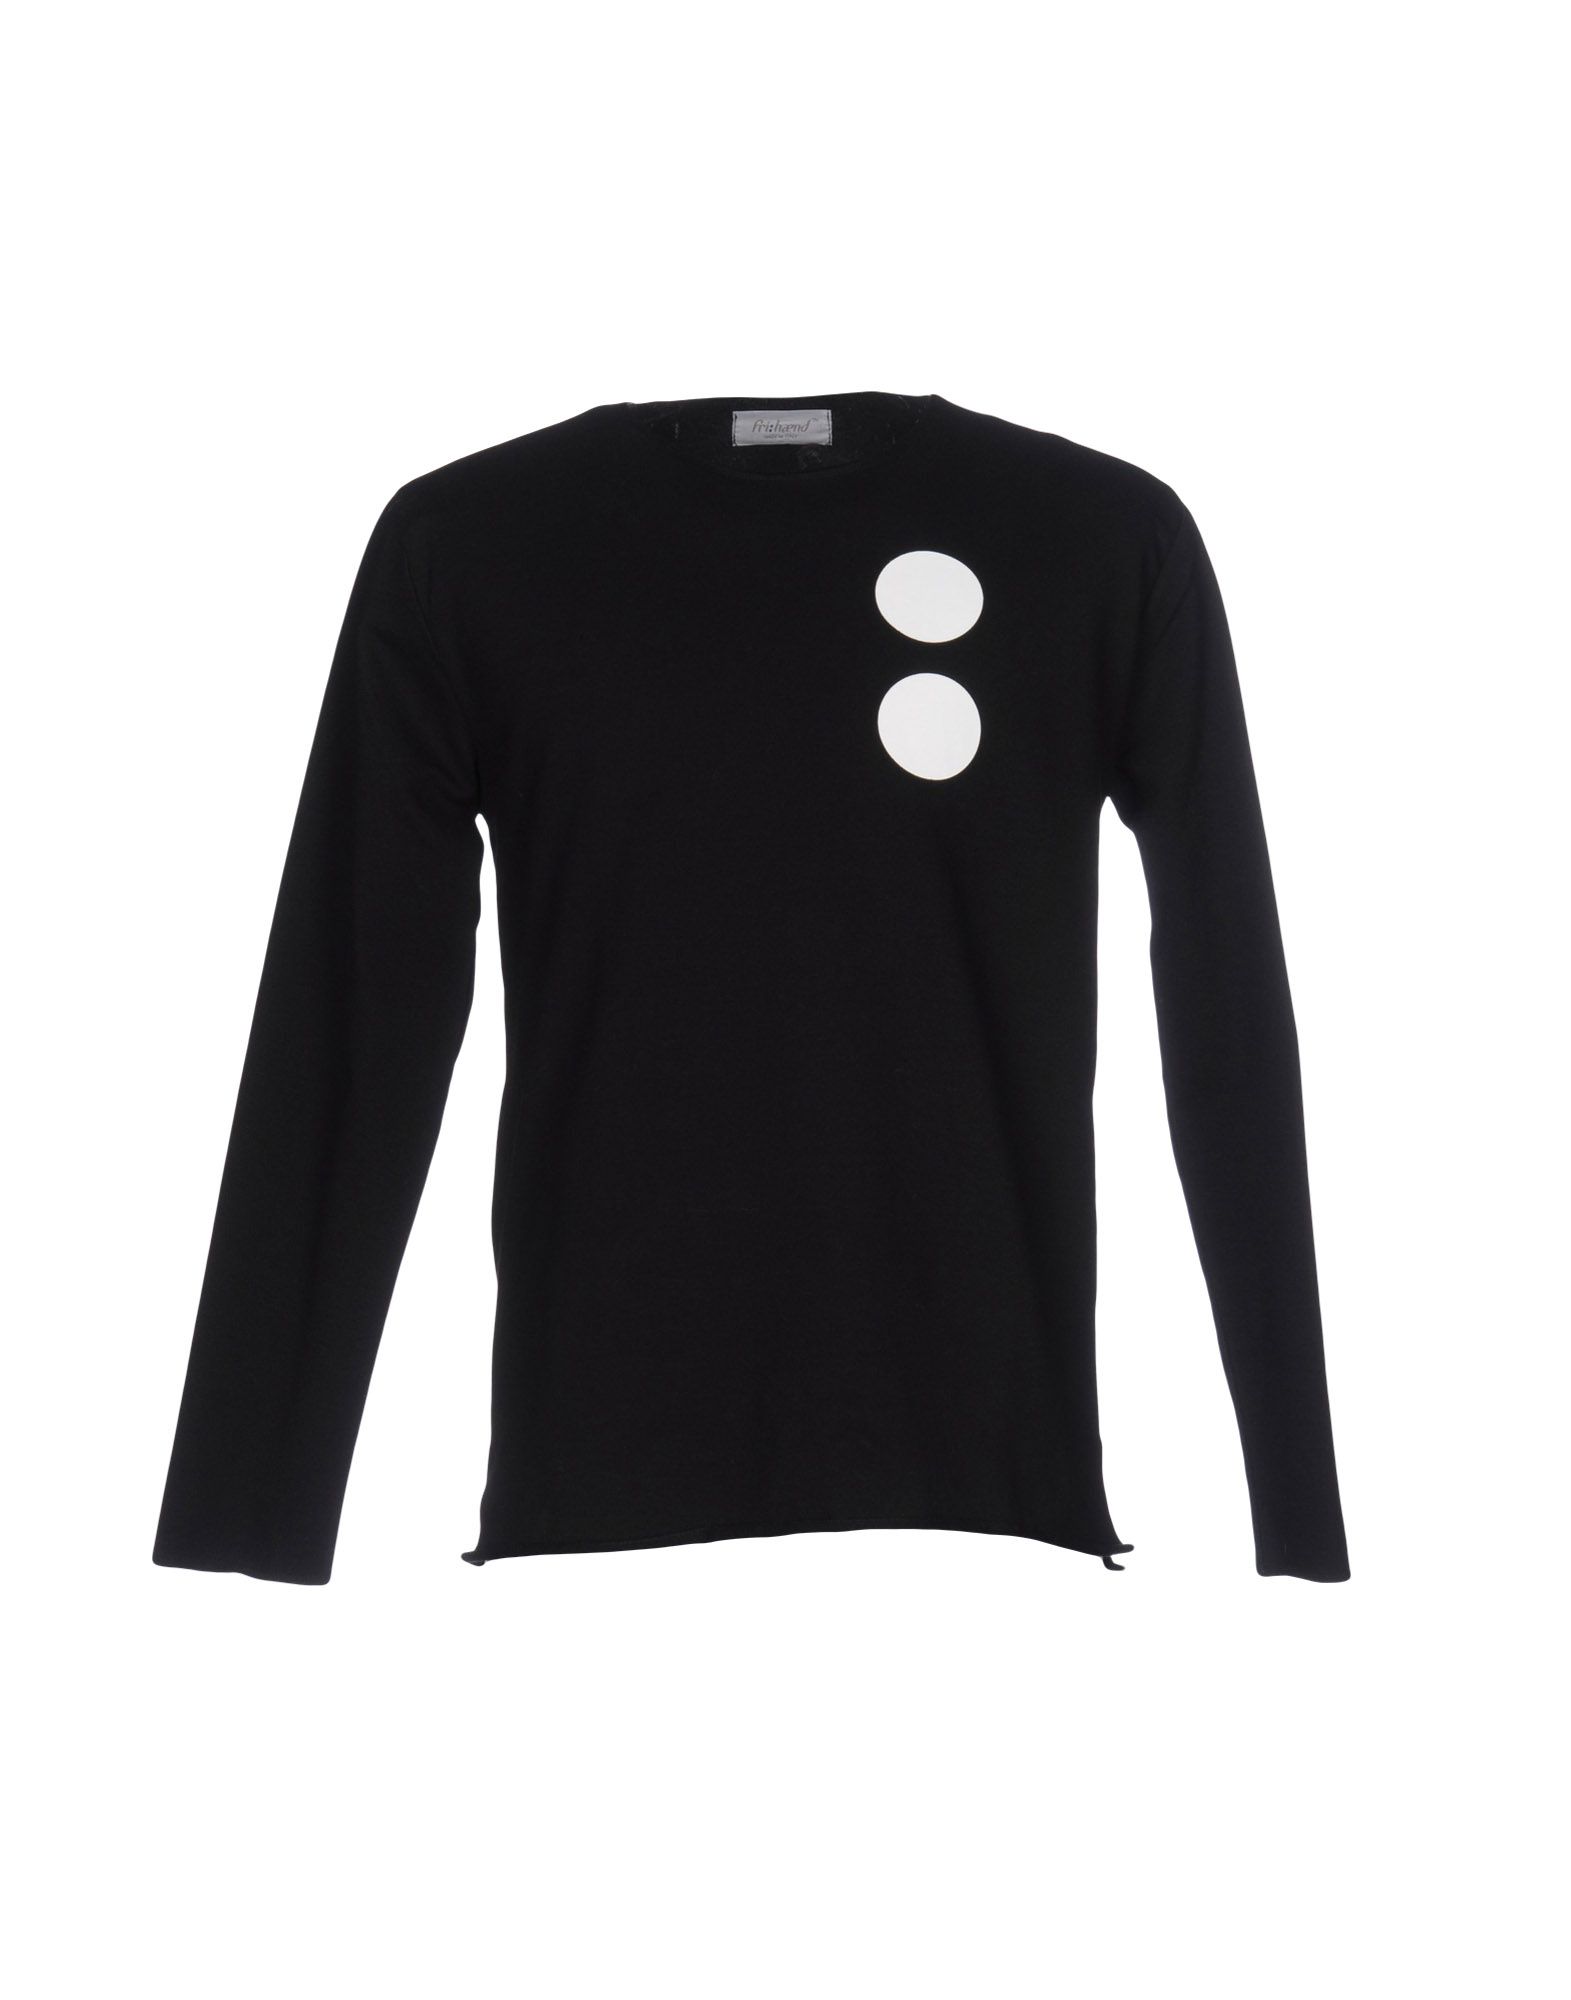 《送料無料》FRI: HAEND メンズ スウェットシャツ ブラック S コットン 100%